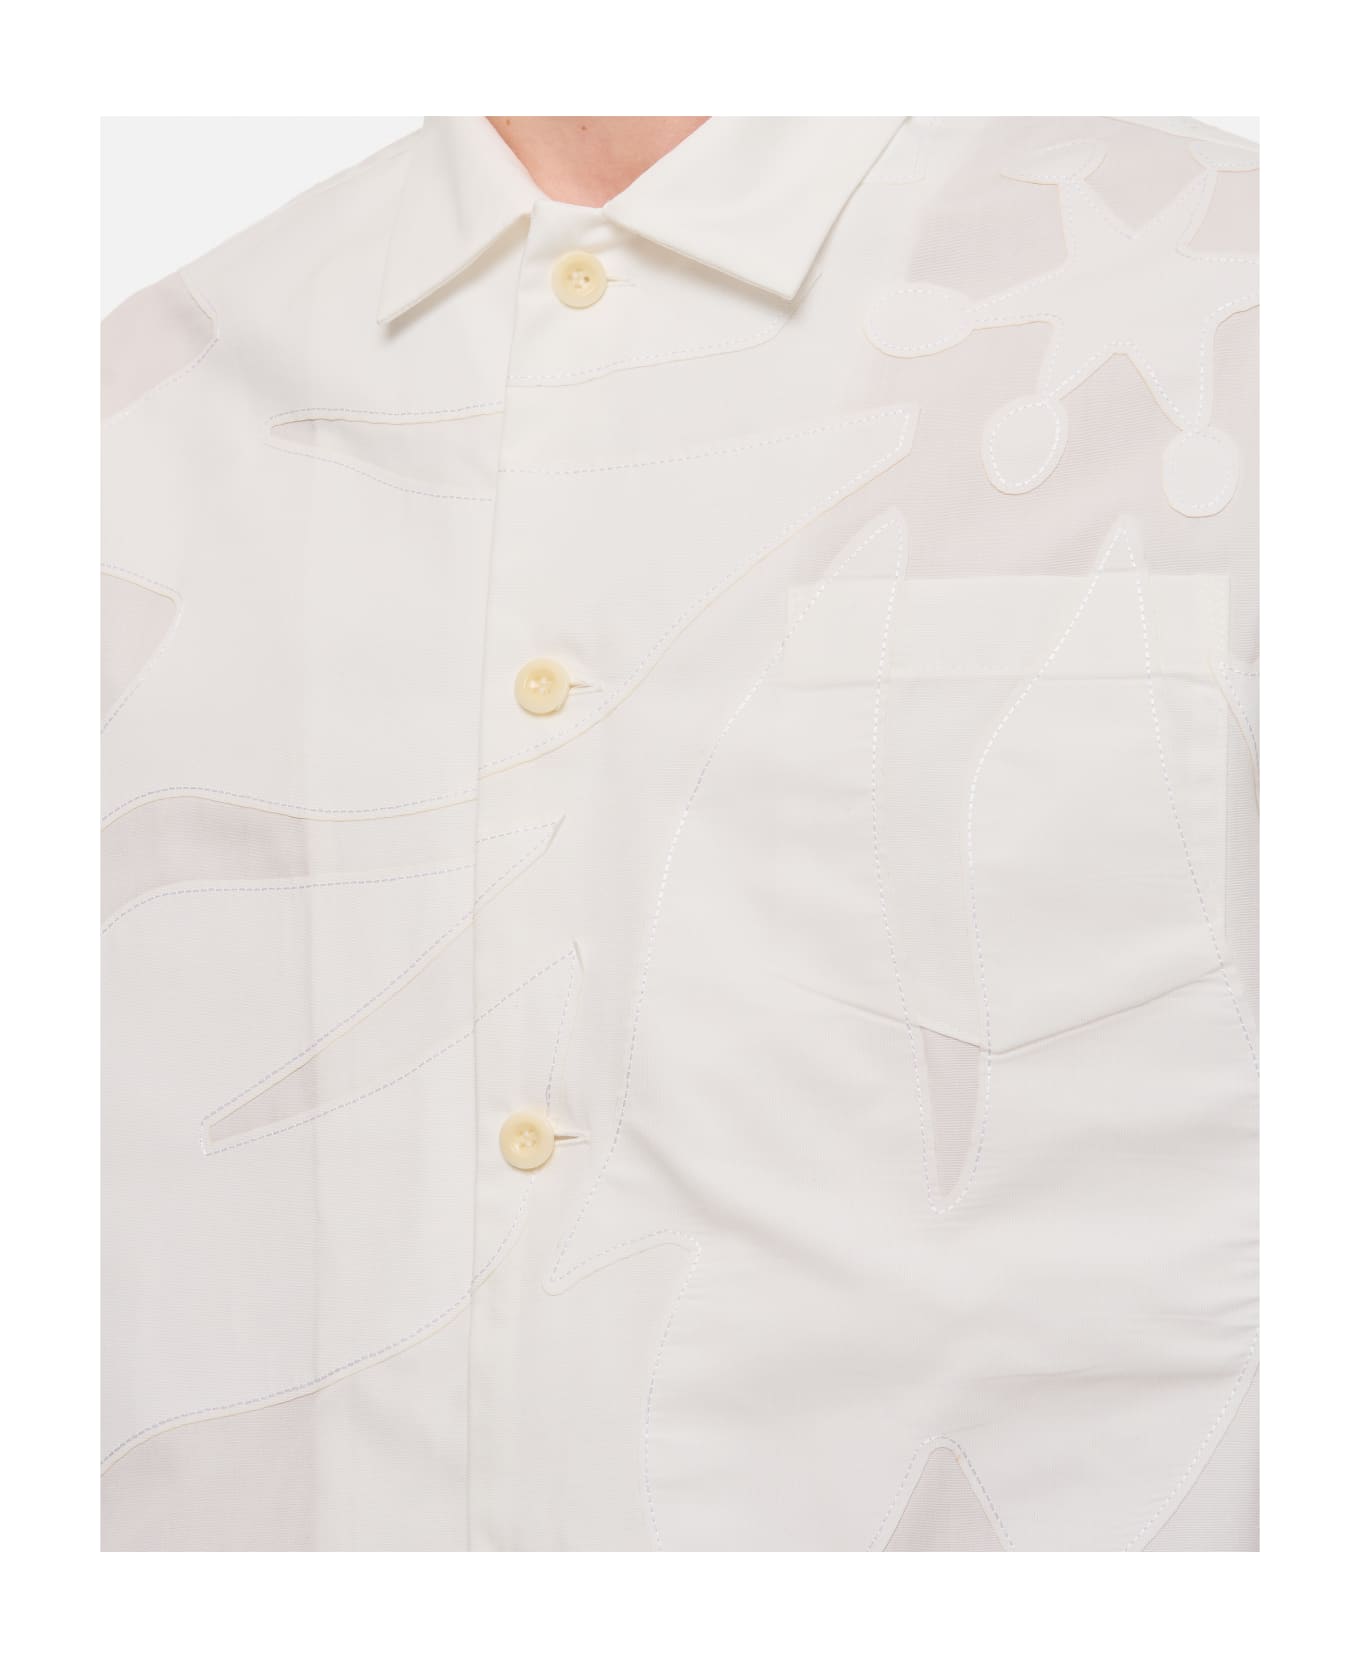 Sacai Cotton Poplin Shirt - White シャツ